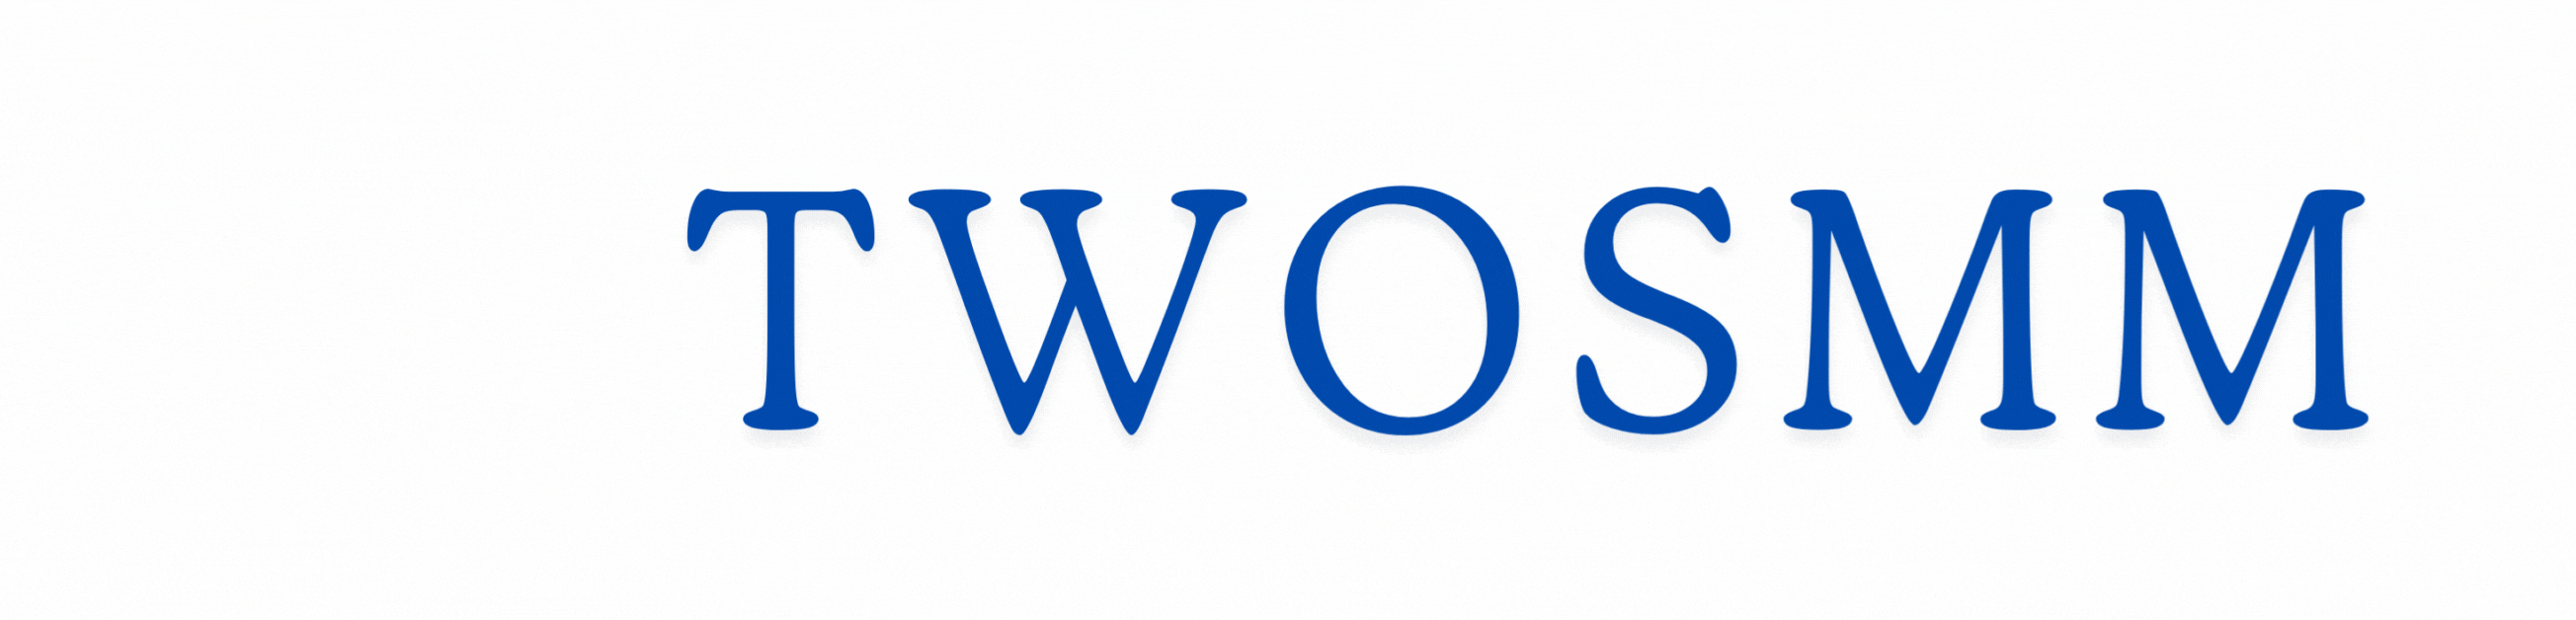 TWOSMM Logo